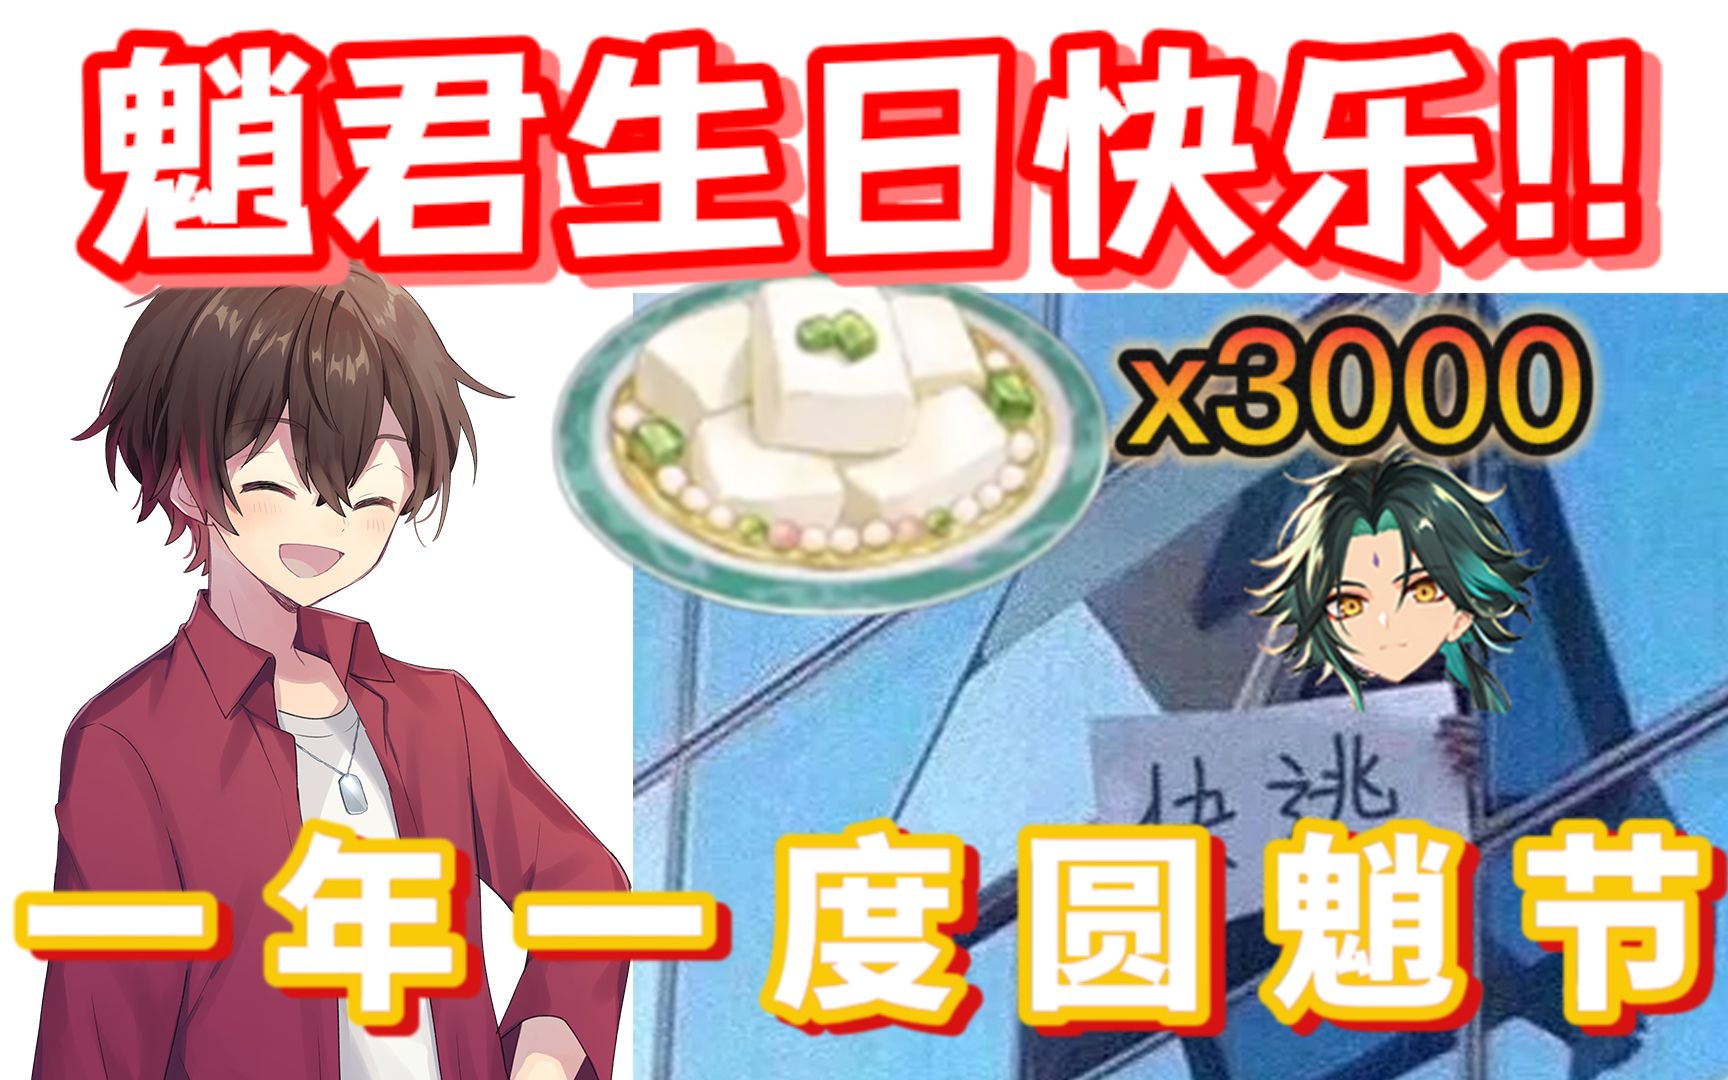 【原神/熟肉/Shin】日本魈厨用3000盘杏仁豆腐大战圆魈节！魈君！这是我们之间的美好回忆啊！！